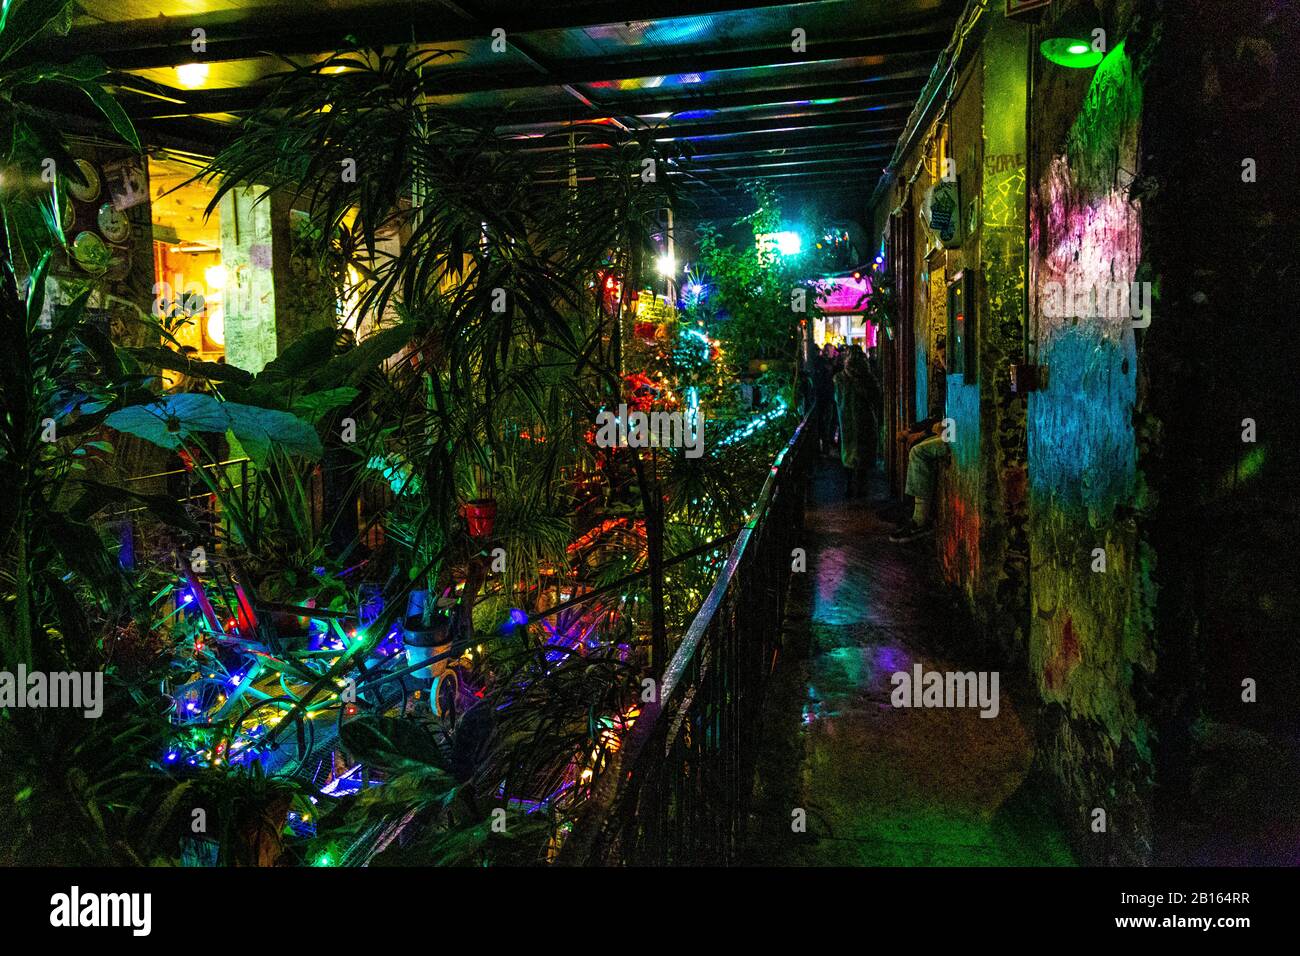 Szimpla Kert Ruin bar all'interno di un ex fabbrica abbandonata, Budapest, Ungheria Foto Stock